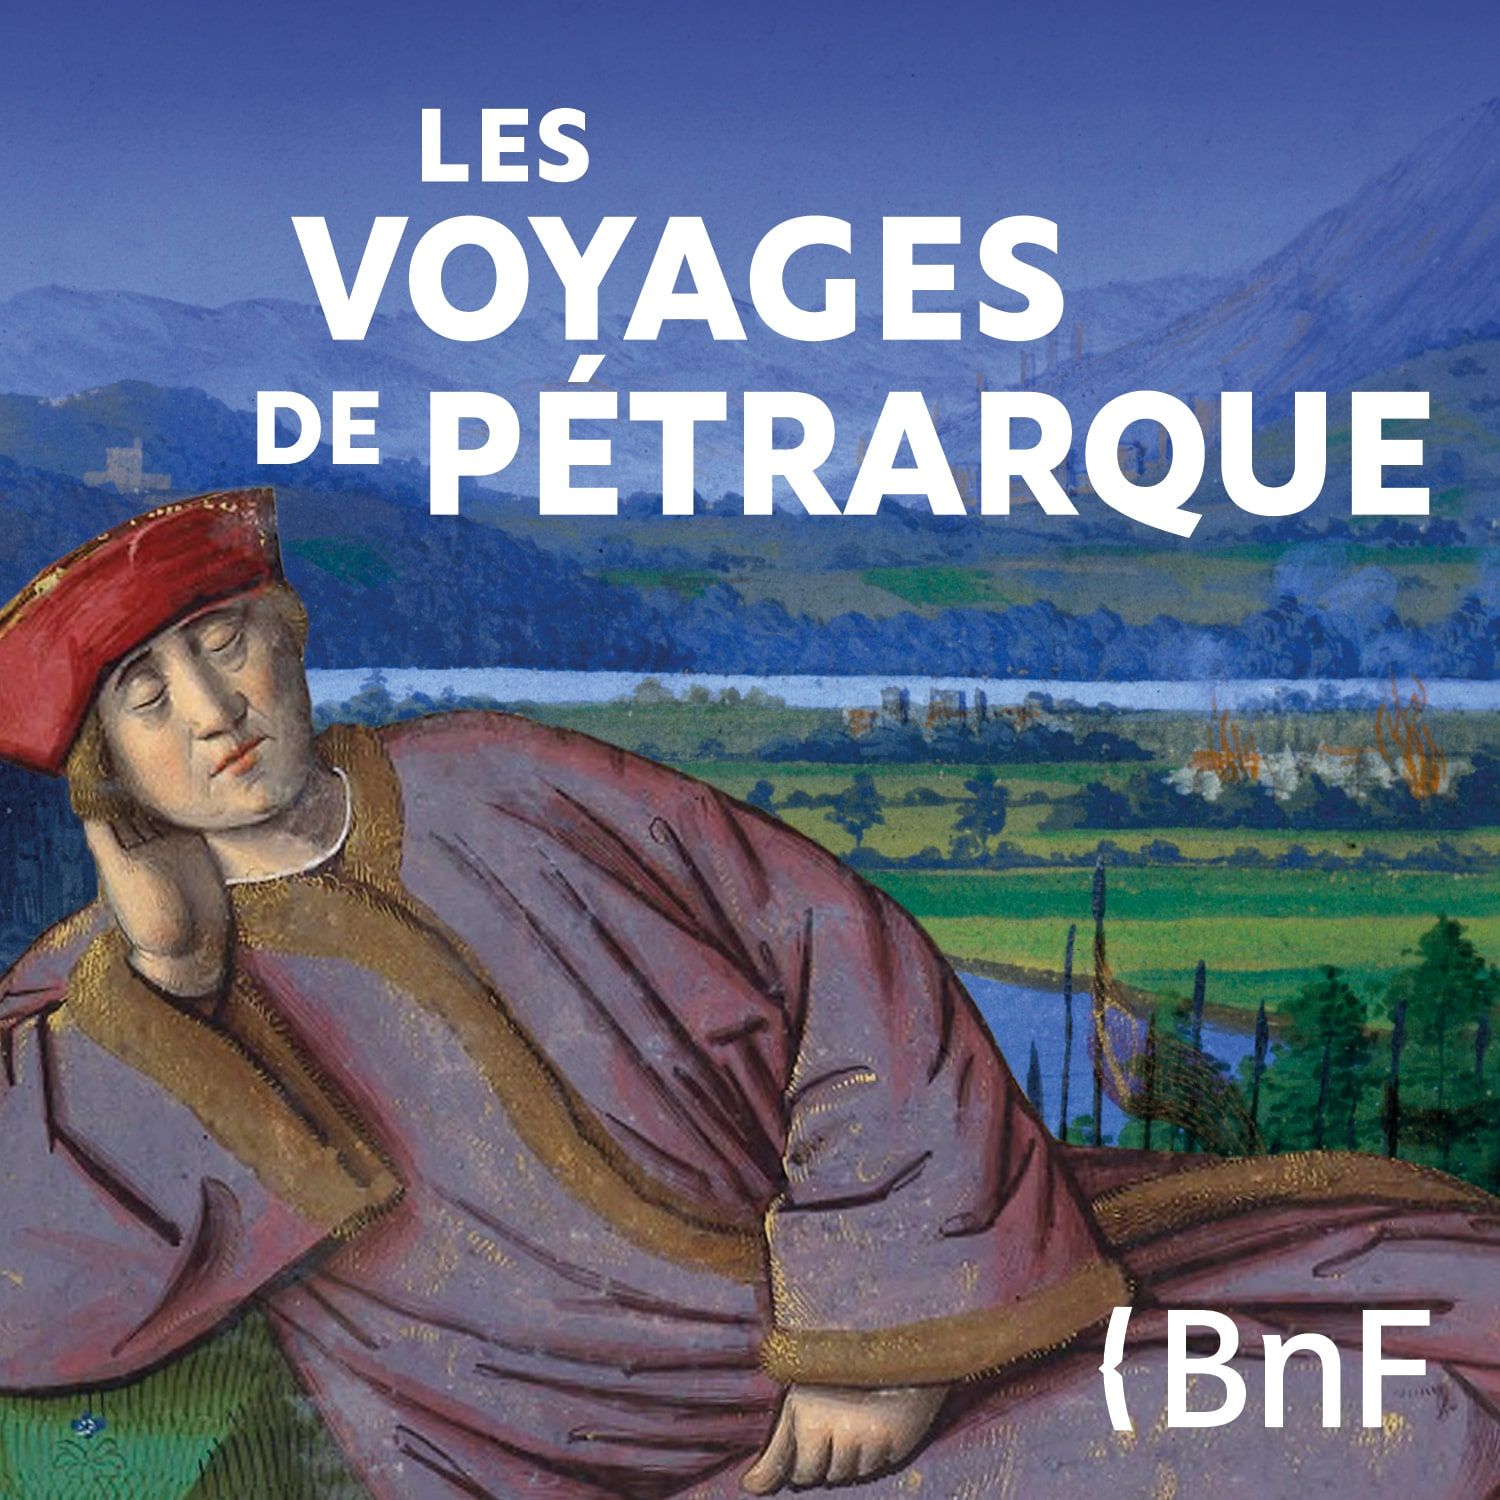 Les voyages de Pétrarque, podcast BnF